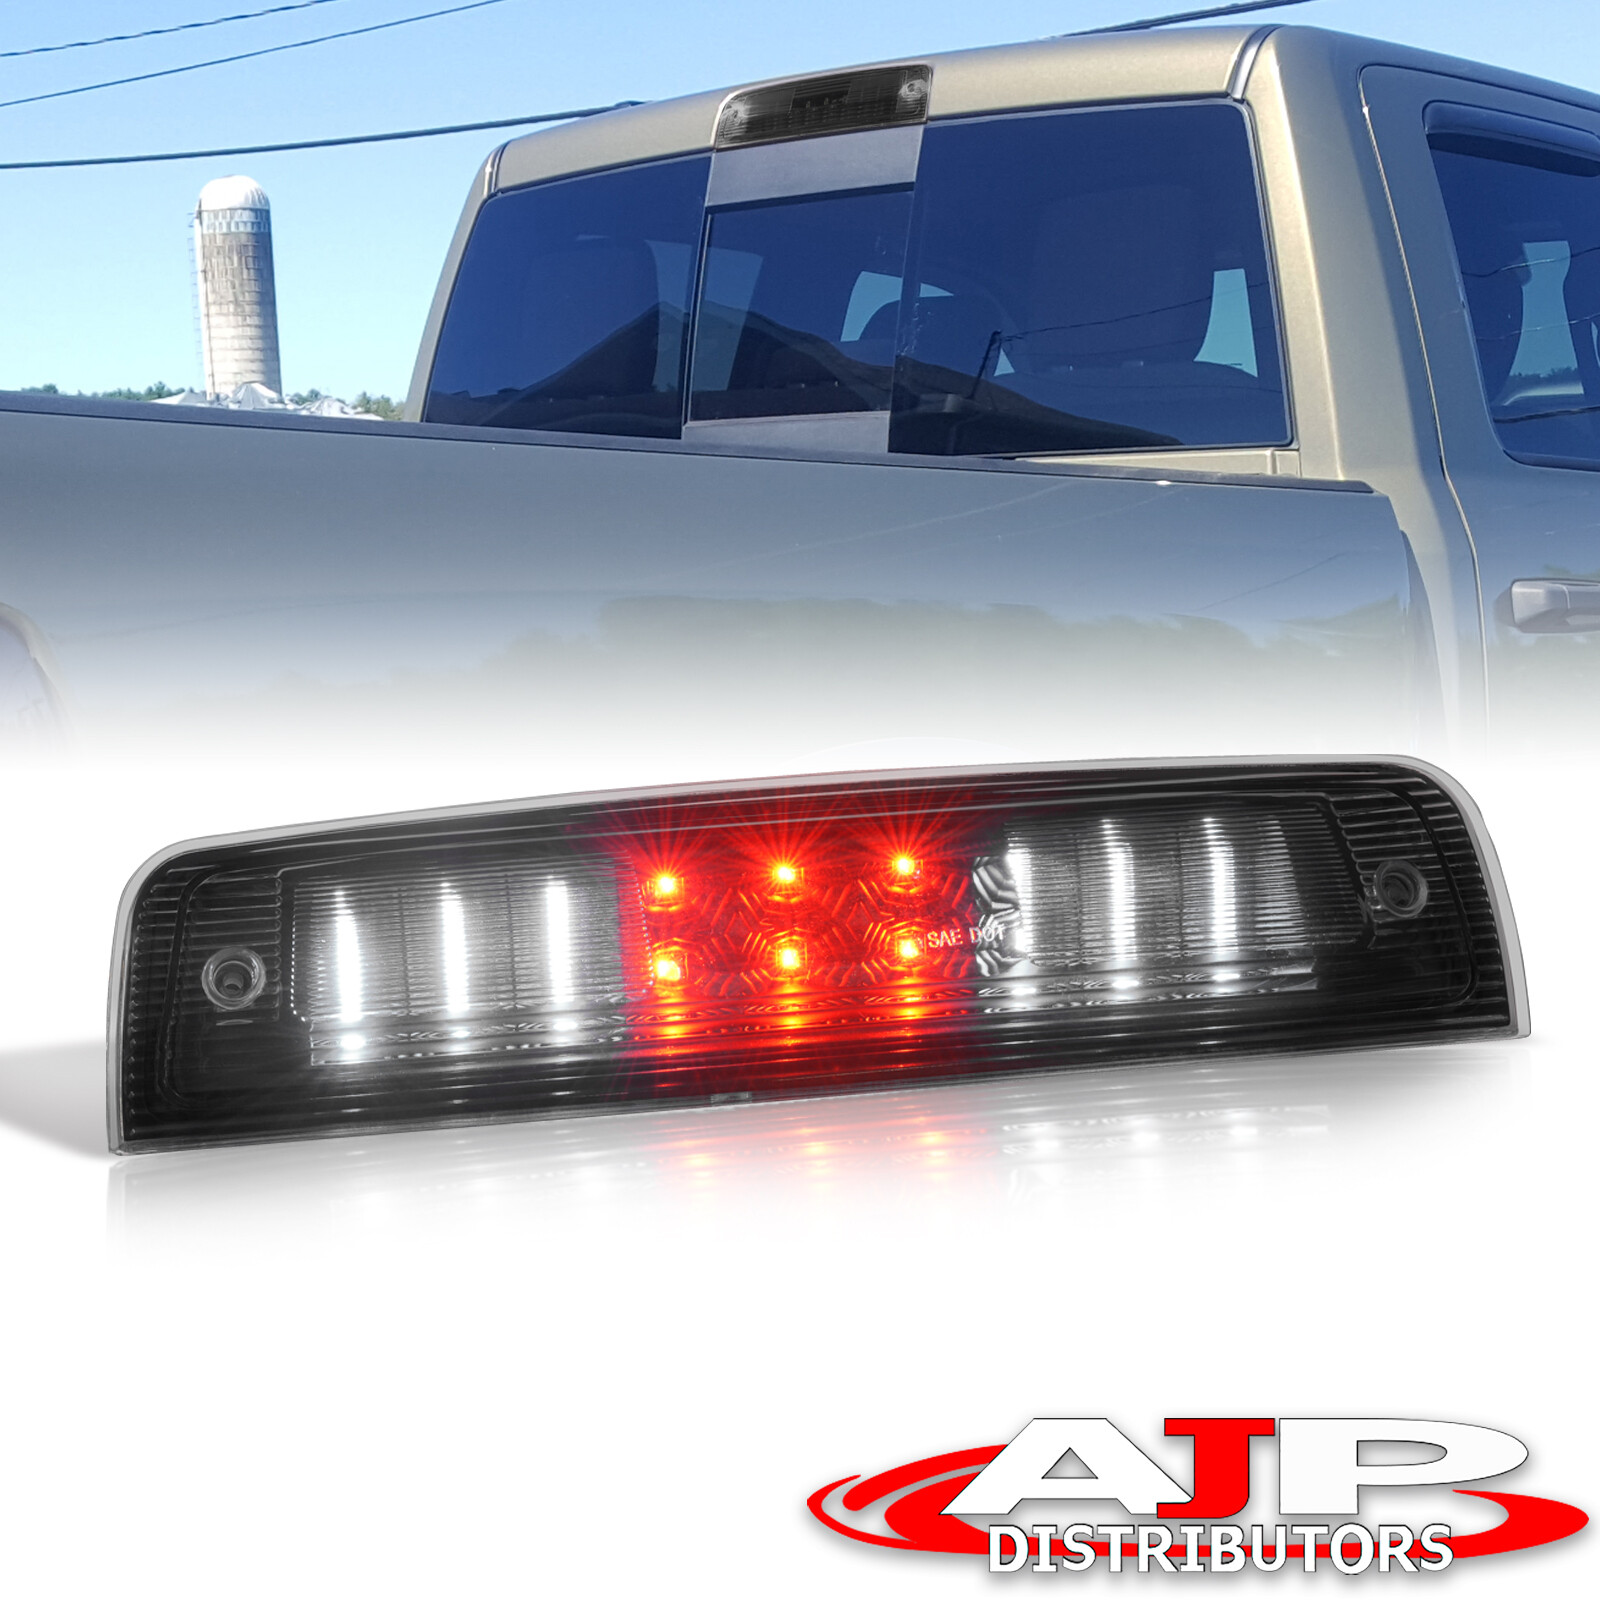 Black LED Cargo 3RD Brake Light Stop Lamp For 2009-2019 Dodge Ram 1500 Classic | eBay 2019 Ram 1500 Led Third Brake Light